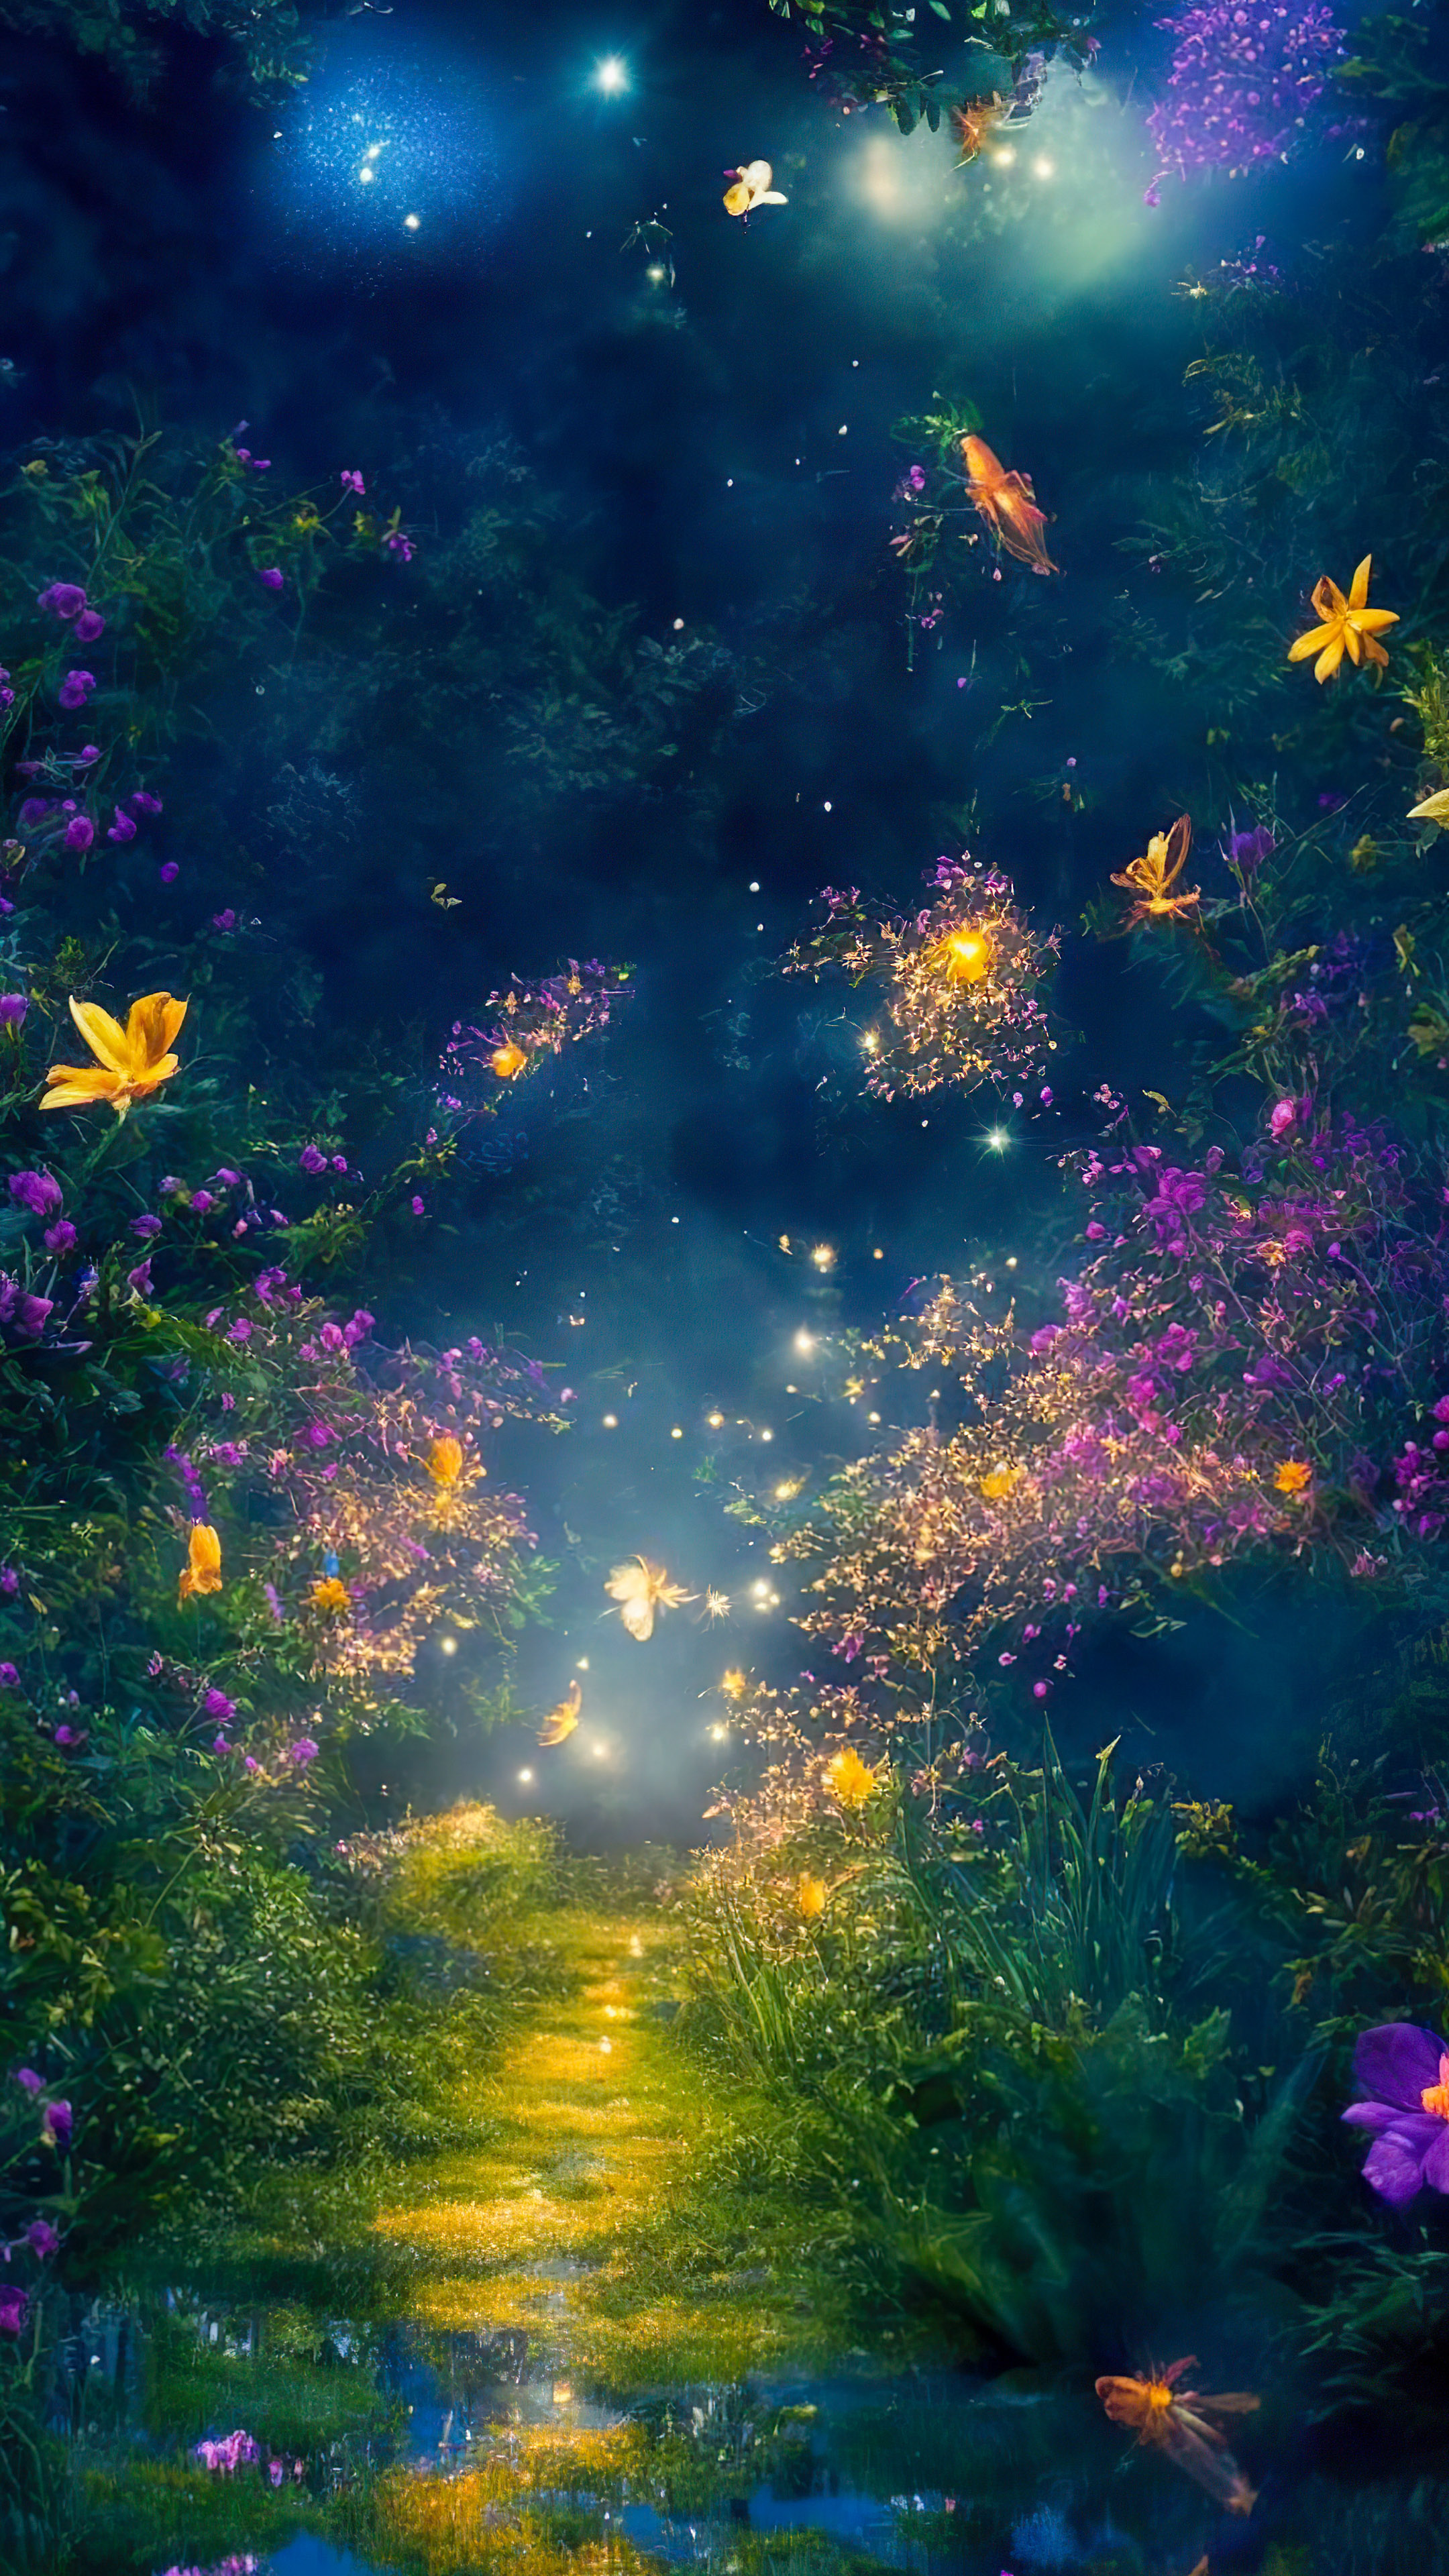 Téléchargez la fantaisie de notre fond d'écran de paysage fantastique de beaux paysages, illustrant un jardin magique et capricieux la nuit, où les lucioles dansent autour de fleurs vibrantes et luminescentes.